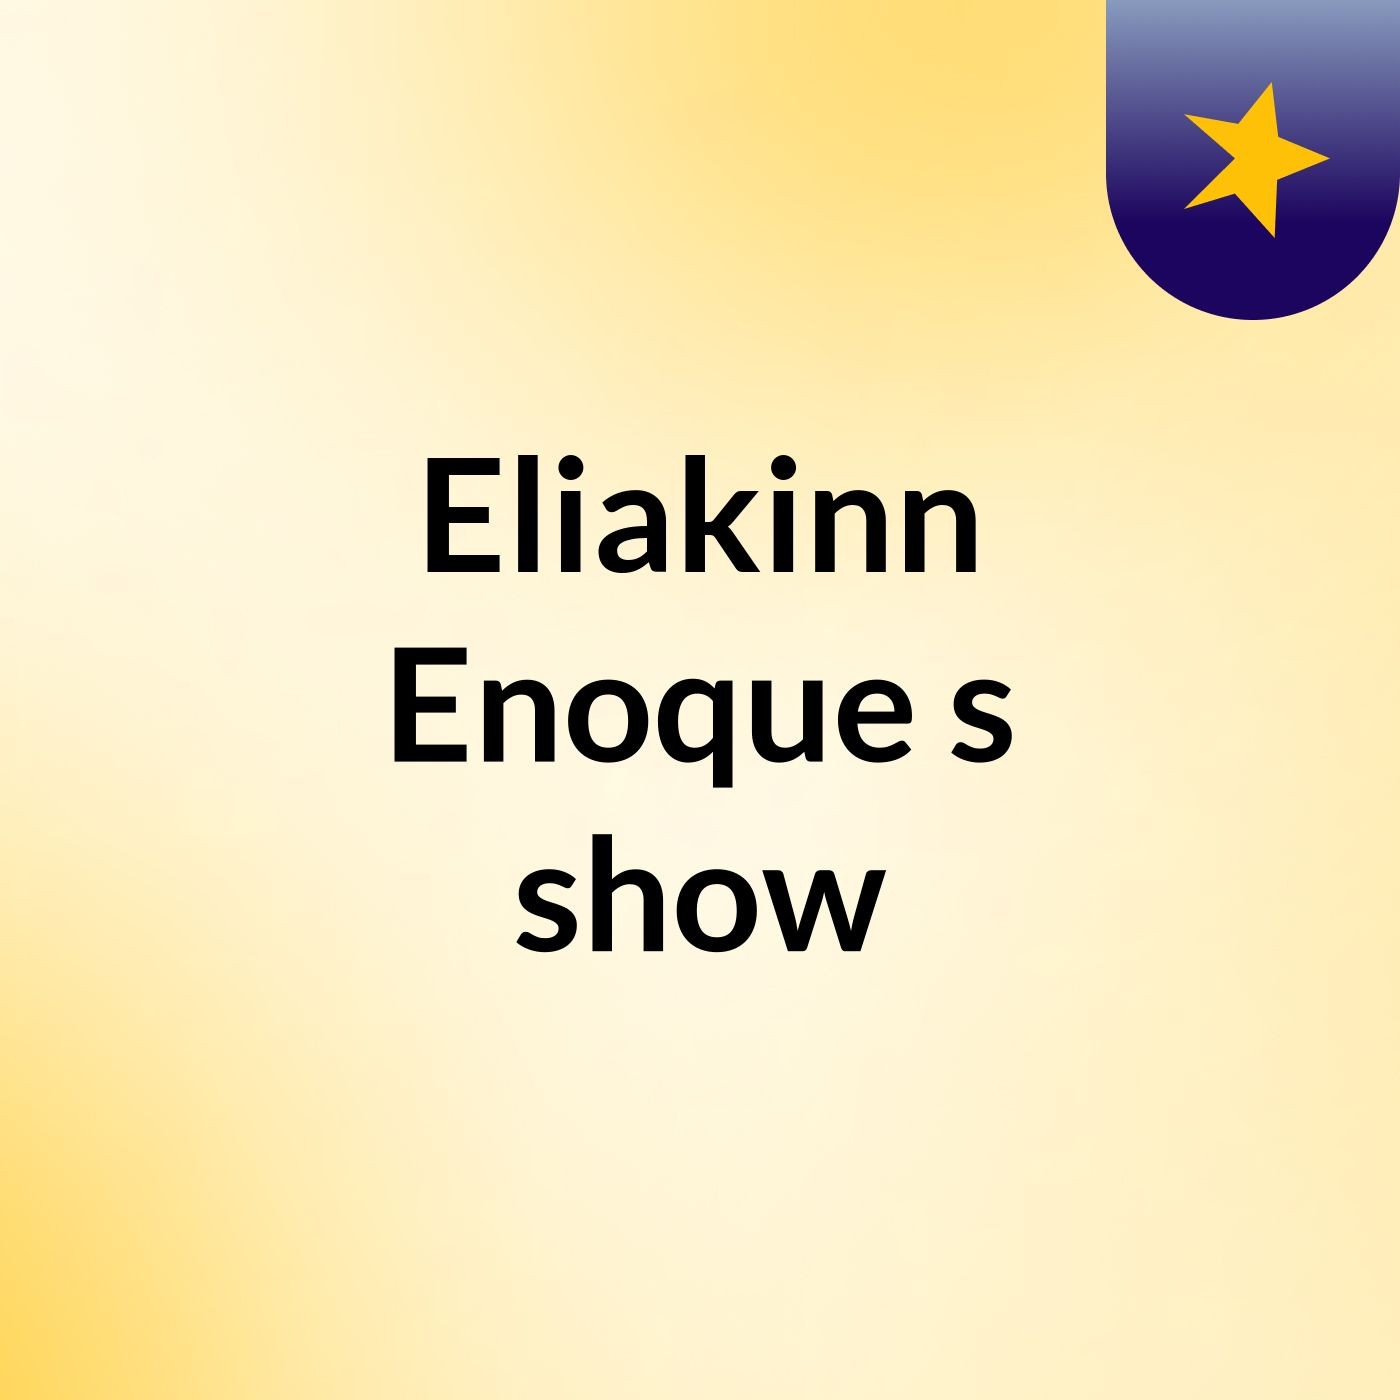 Eliakinn Enoque's show